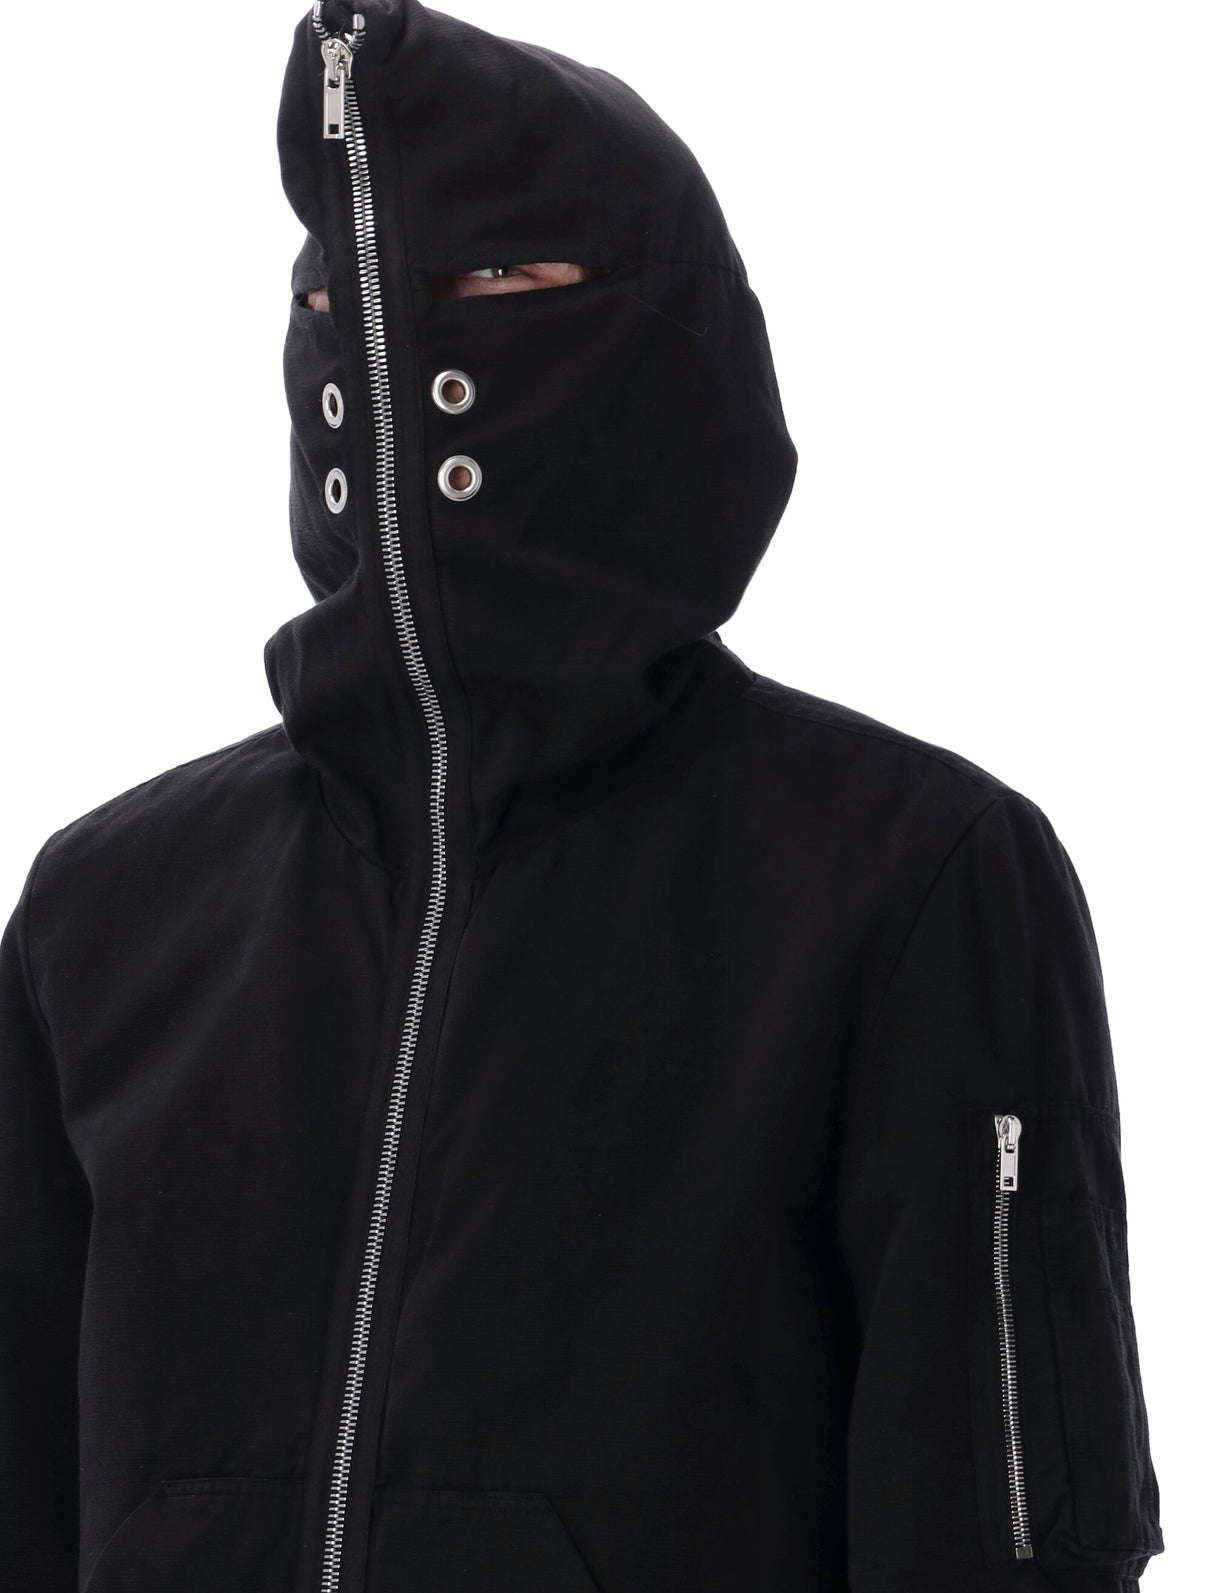 Black Oversized Fit Gimp Flight Bomber Jacket - Men's Cotton Faille Outerwear